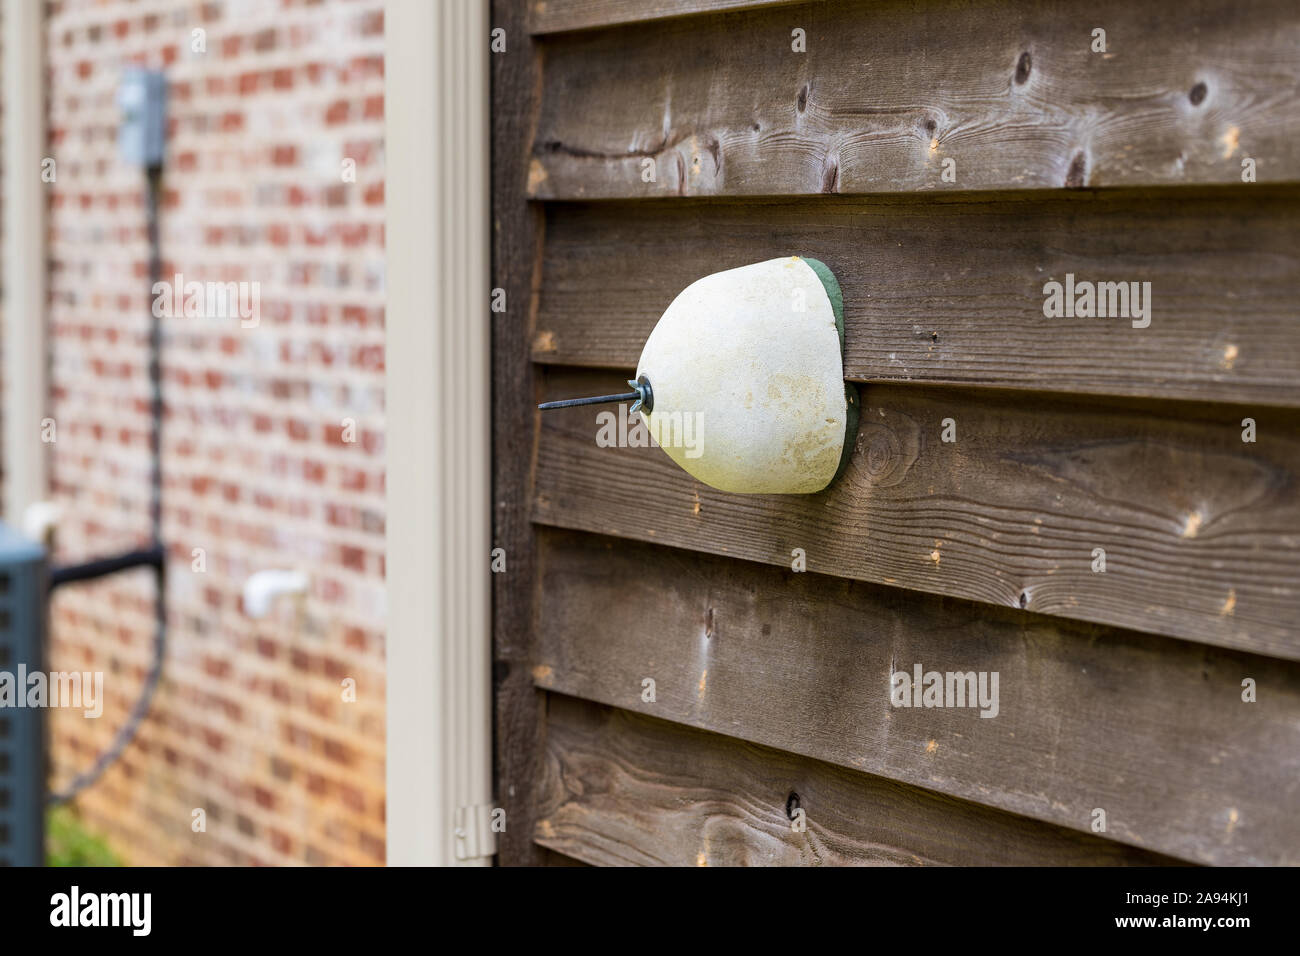 Hahn cover am Wasserhahn installiert es von Frost zu schützen. Stockfoto